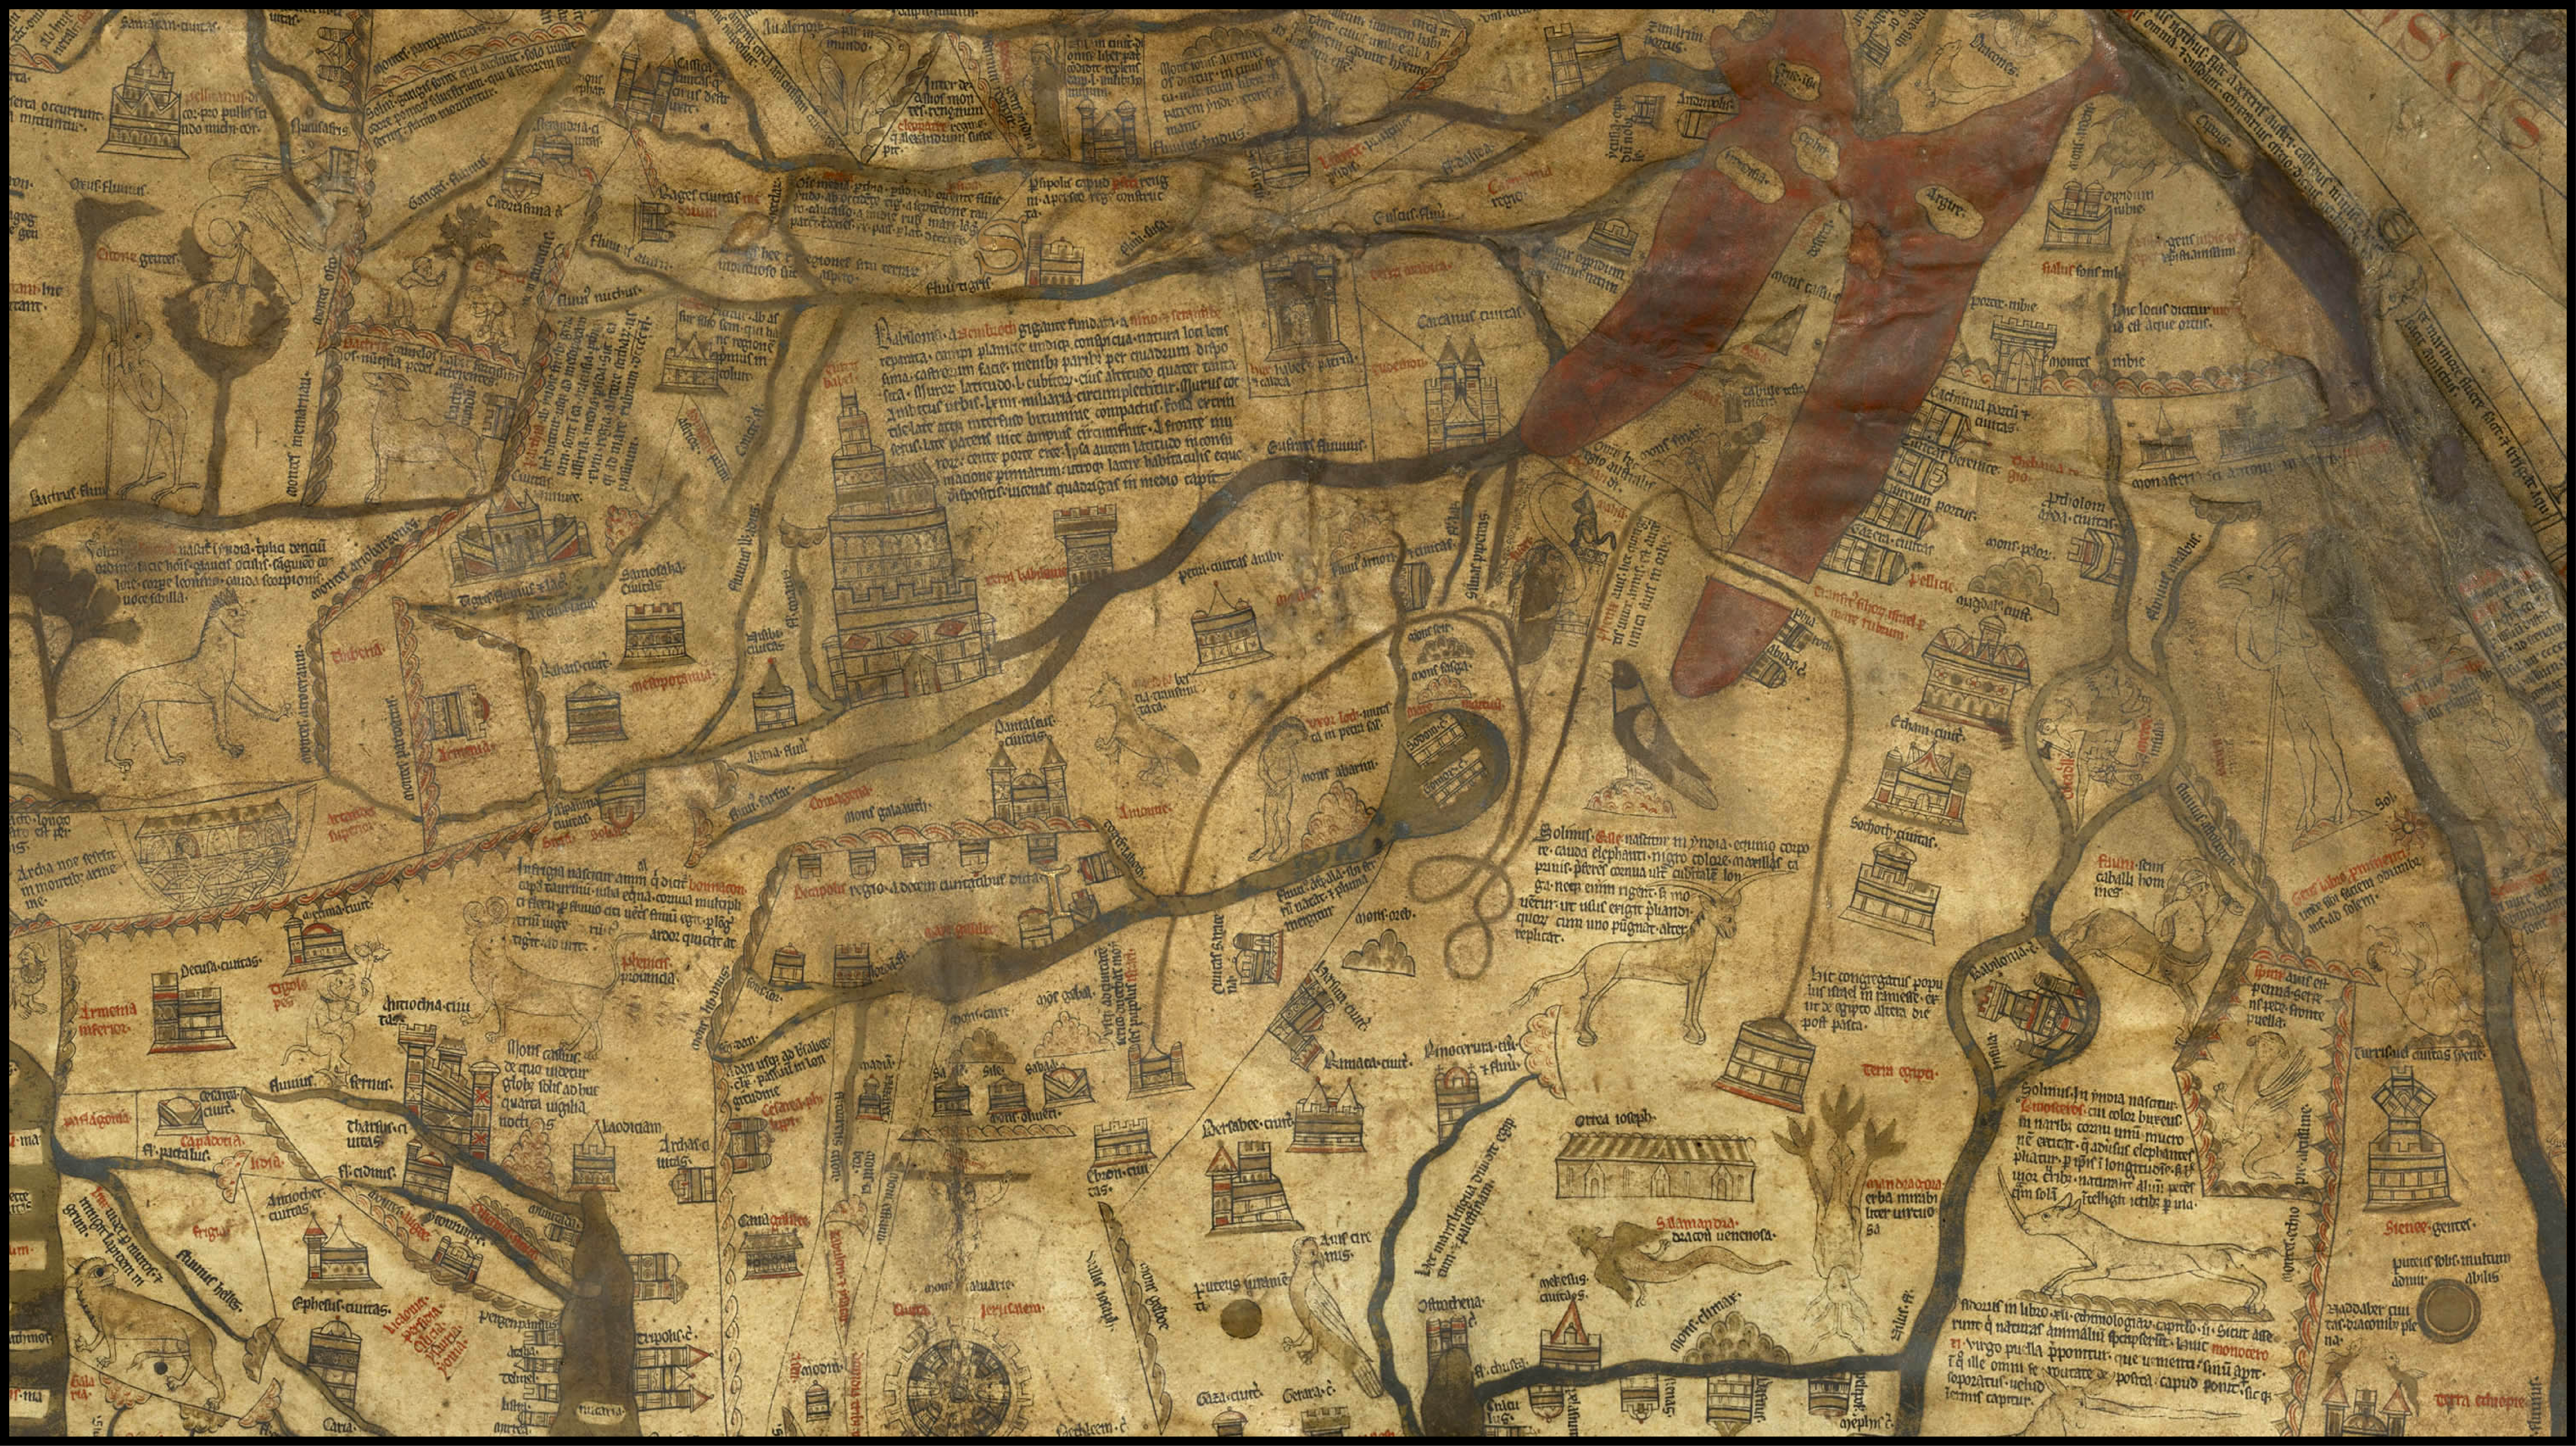 Meraviglie del Medioevo: la Mappa Mundi della cattedrale di Hereford